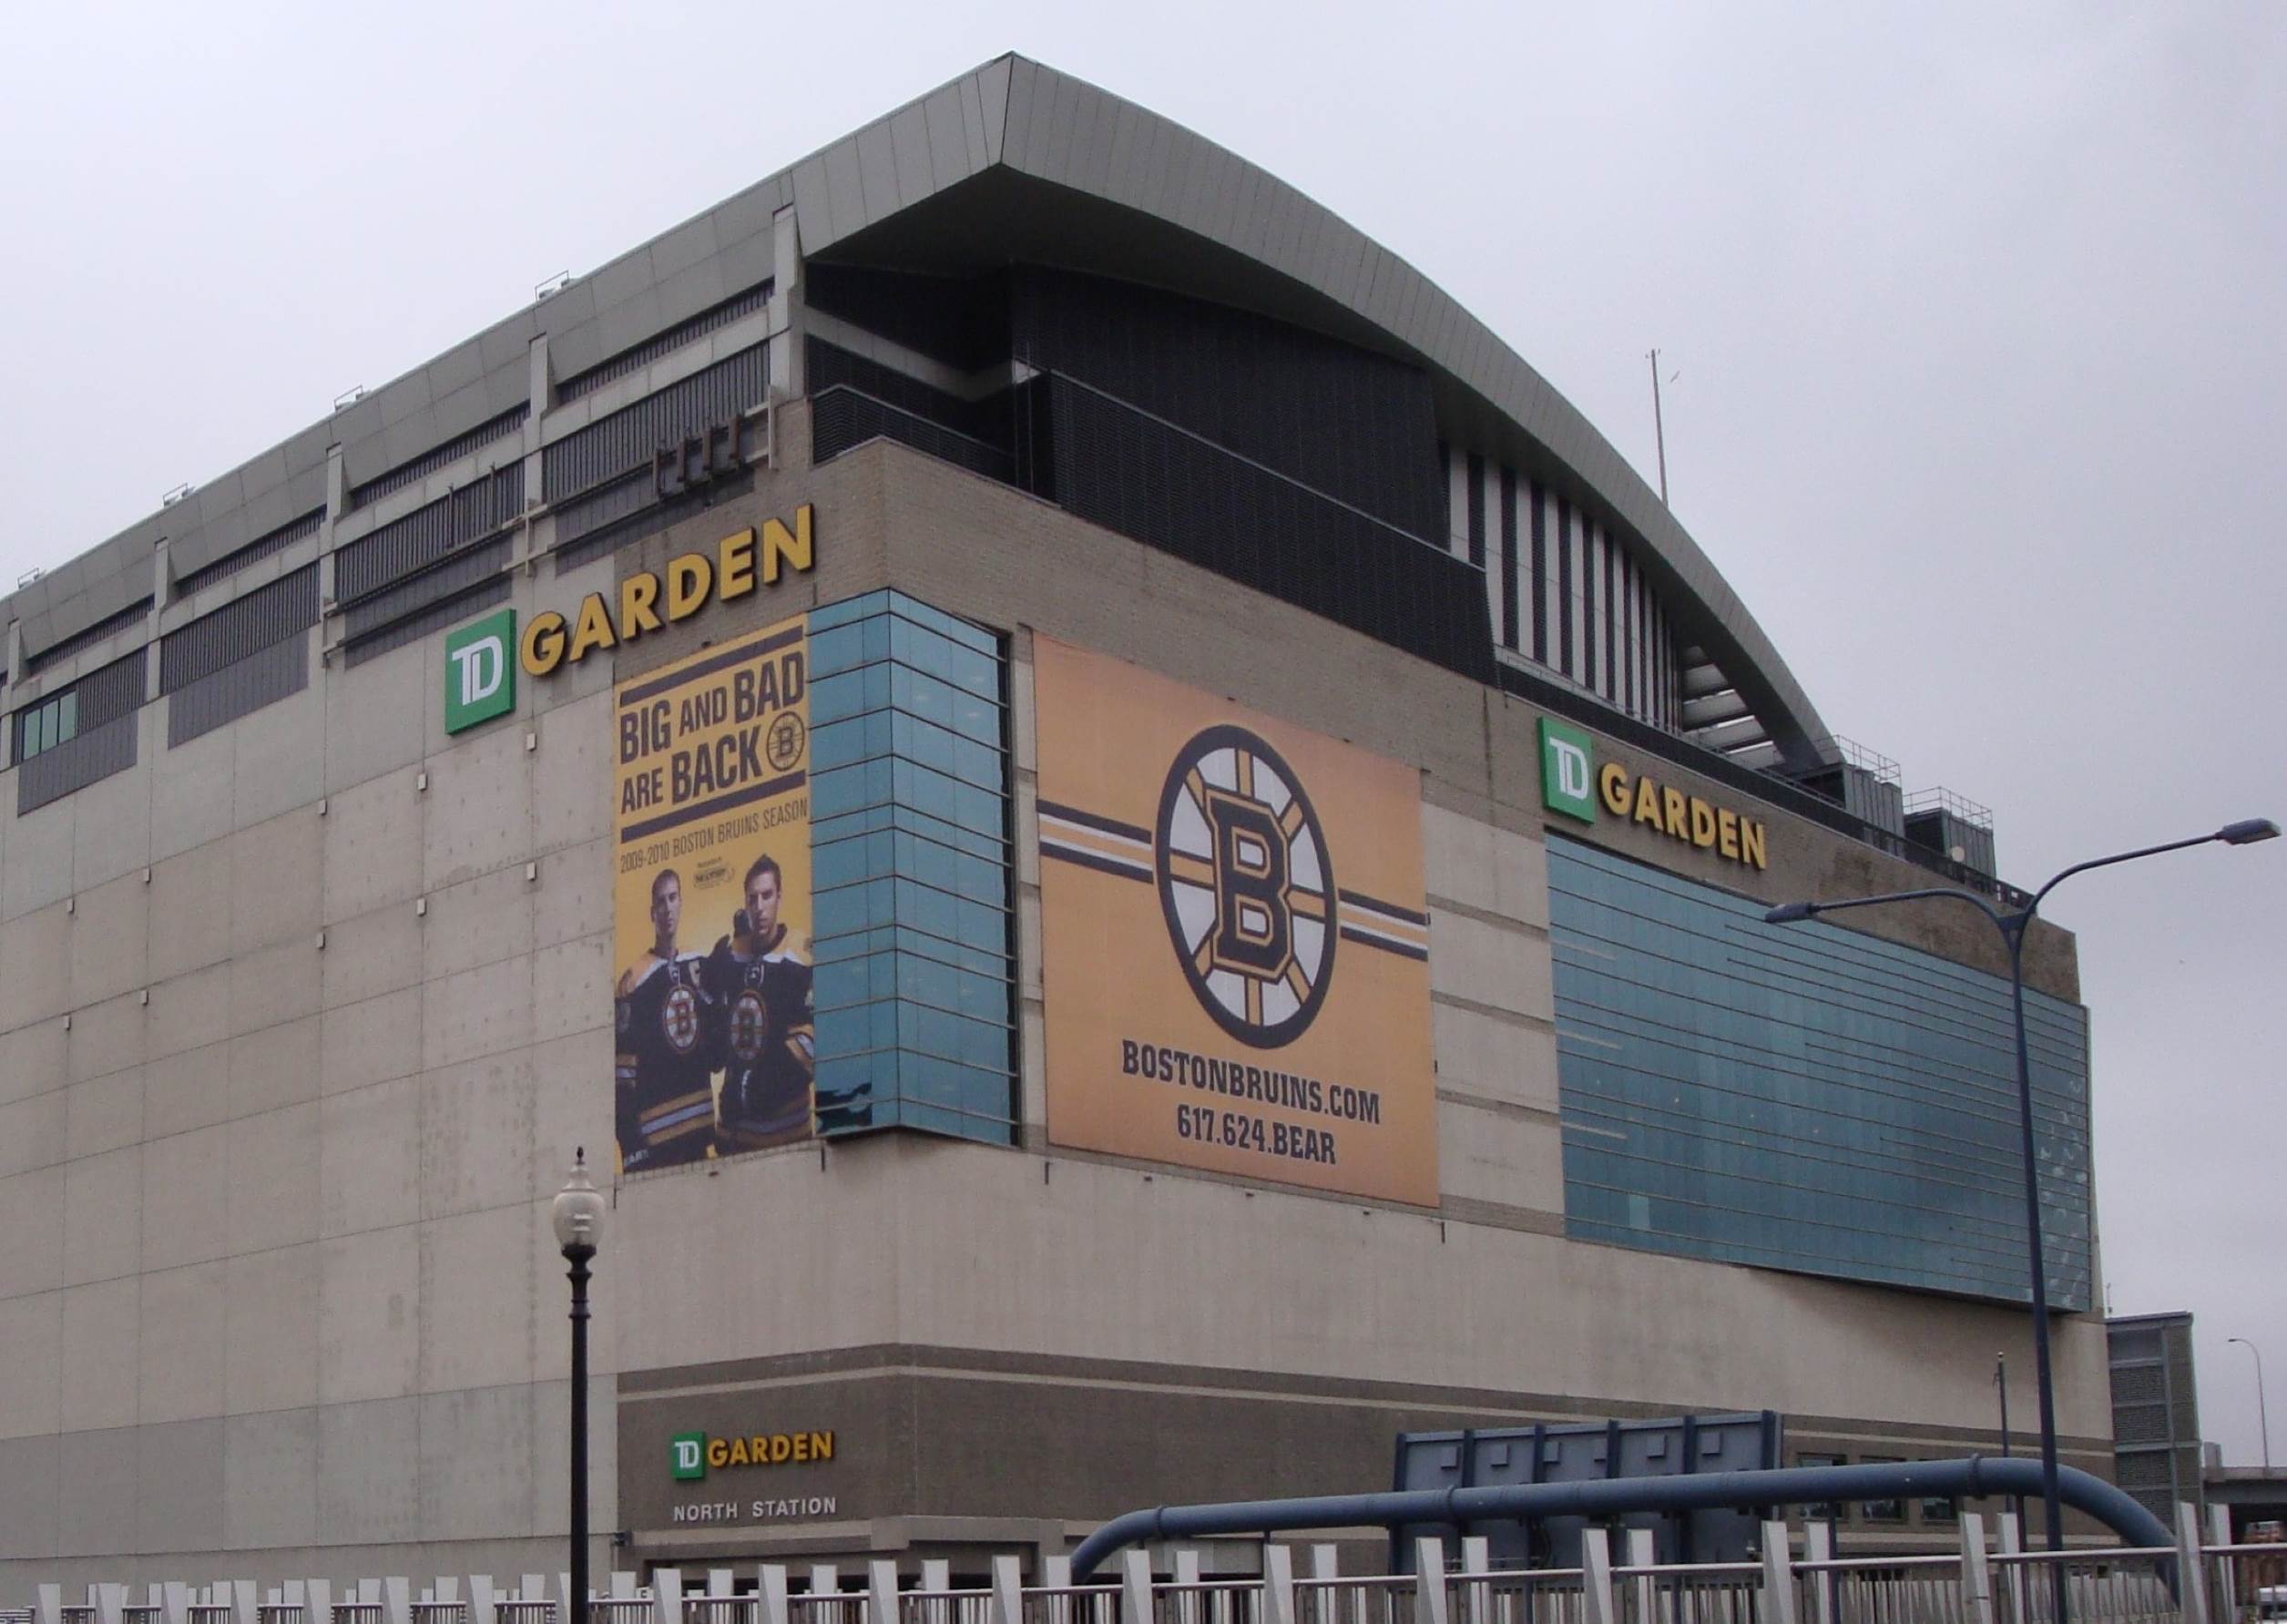 TD Garden welcomes fans back to Bruins, Celtics games